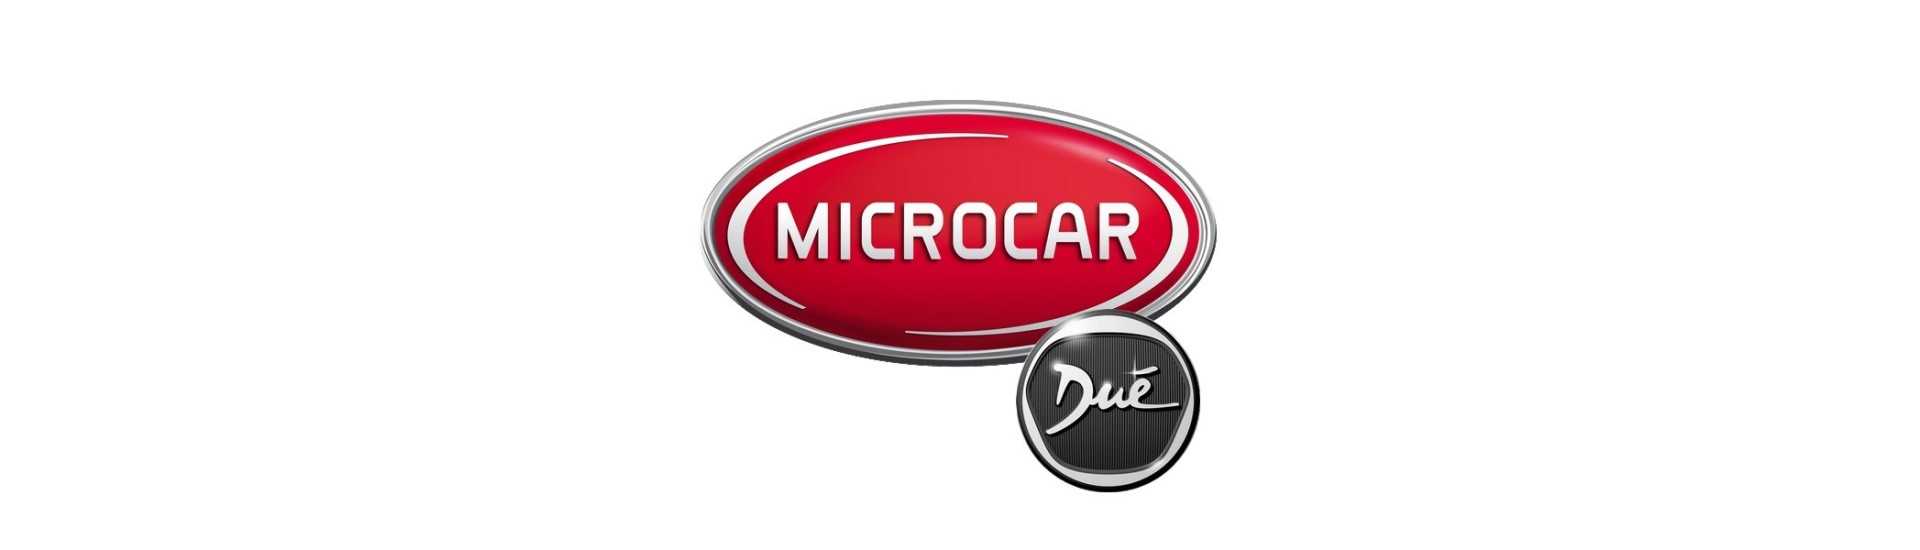 Cubo da porta ao melhor preço para o carro sem uma permissão Microcar Dué